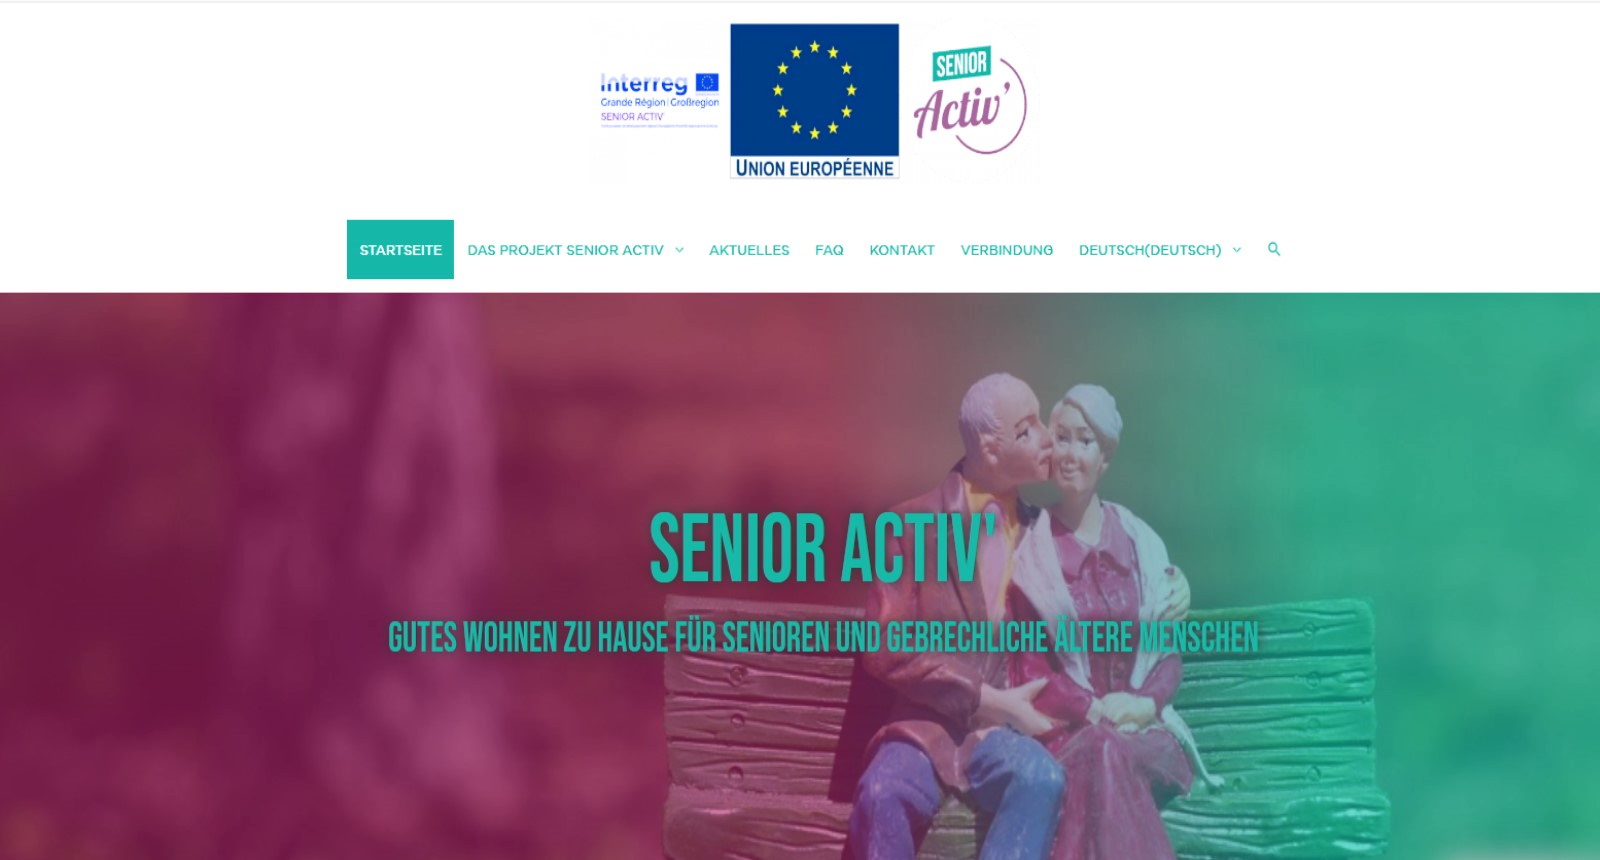 Lire la suite à propos de l’article Mieux viellir – Projet européen SENIOR ACTIV’ avec EUROP’age cherche des solutions